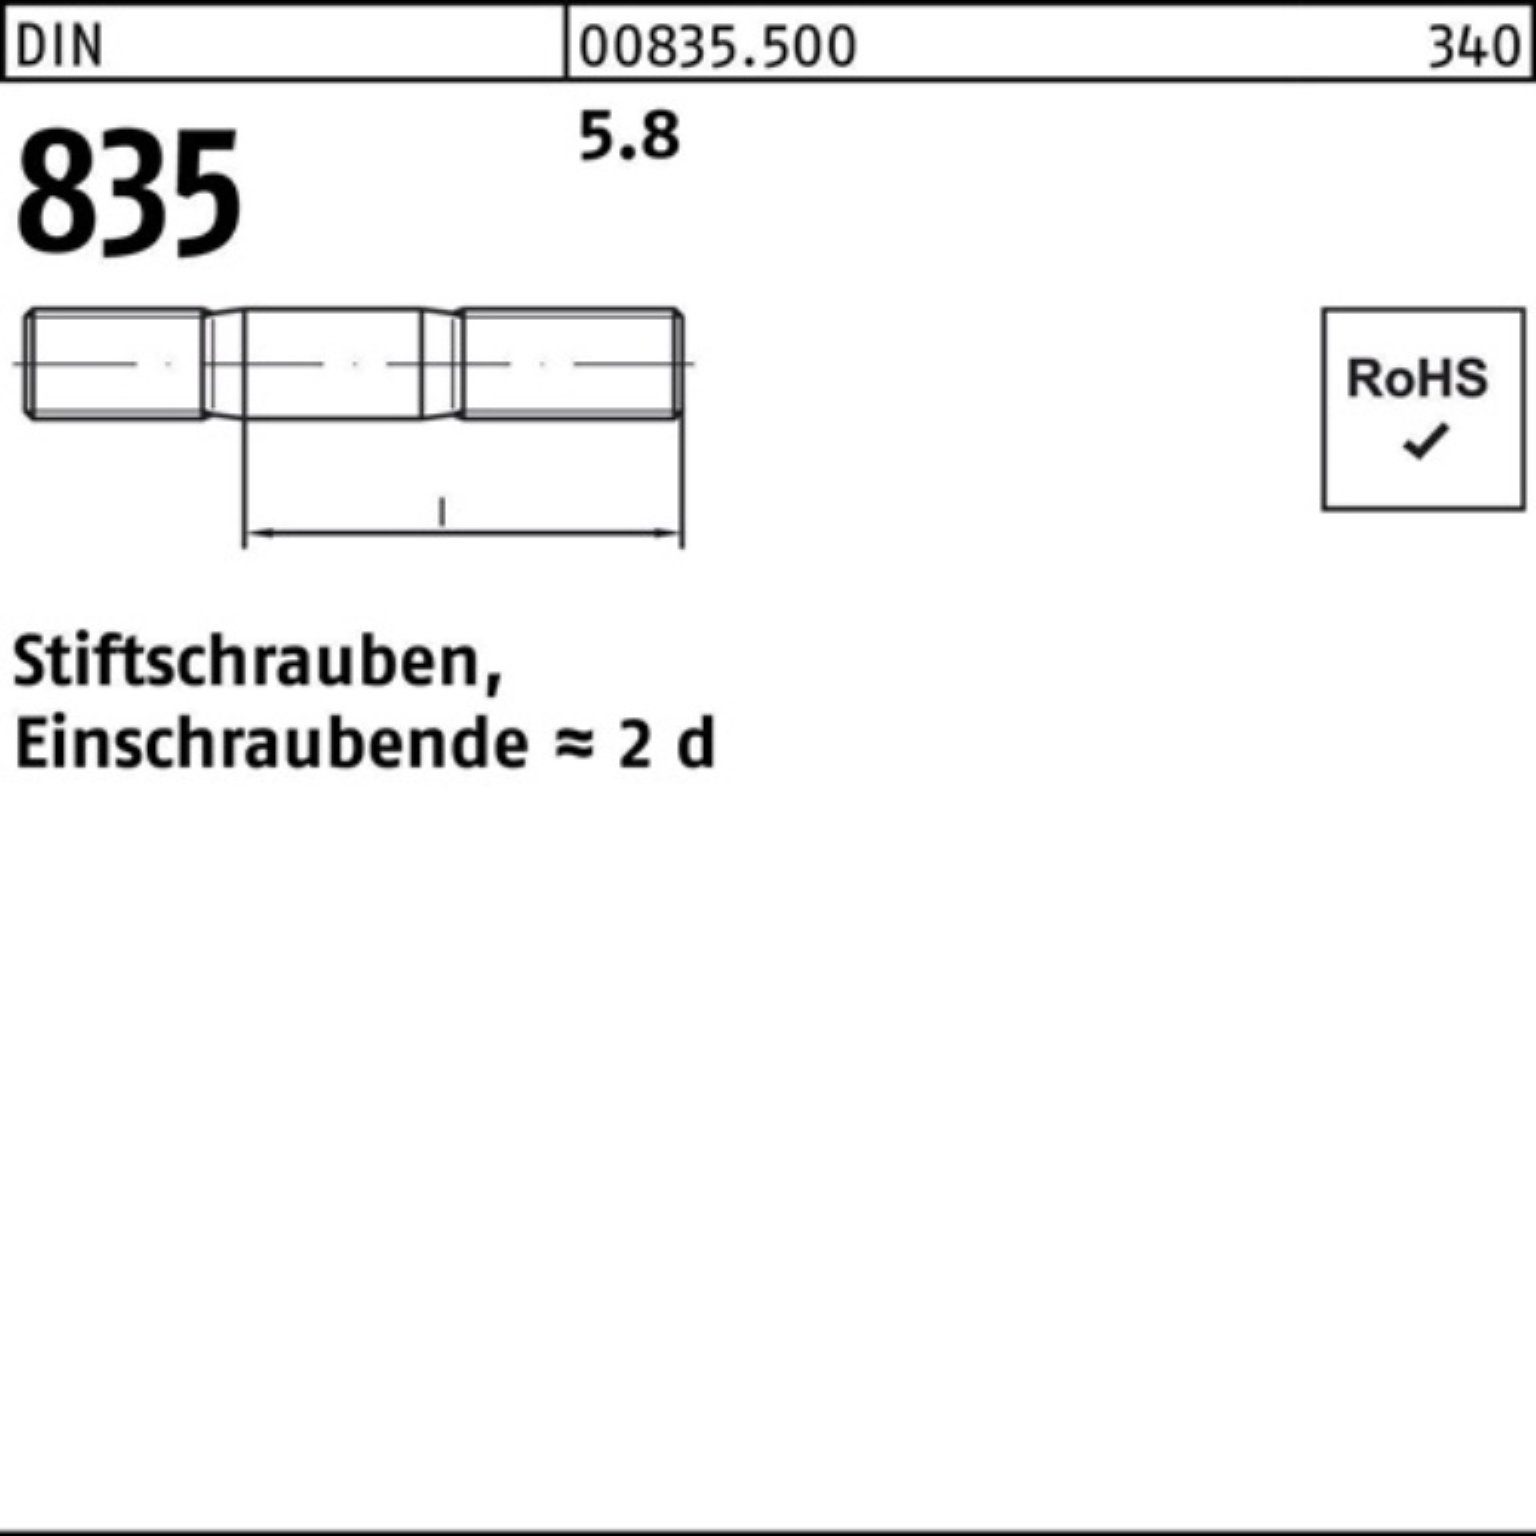 100er 100 5.8 Reyher Stiftschraube DIN Stü M8x 90 Einschraubende=2d Pack Stiftschraube 835